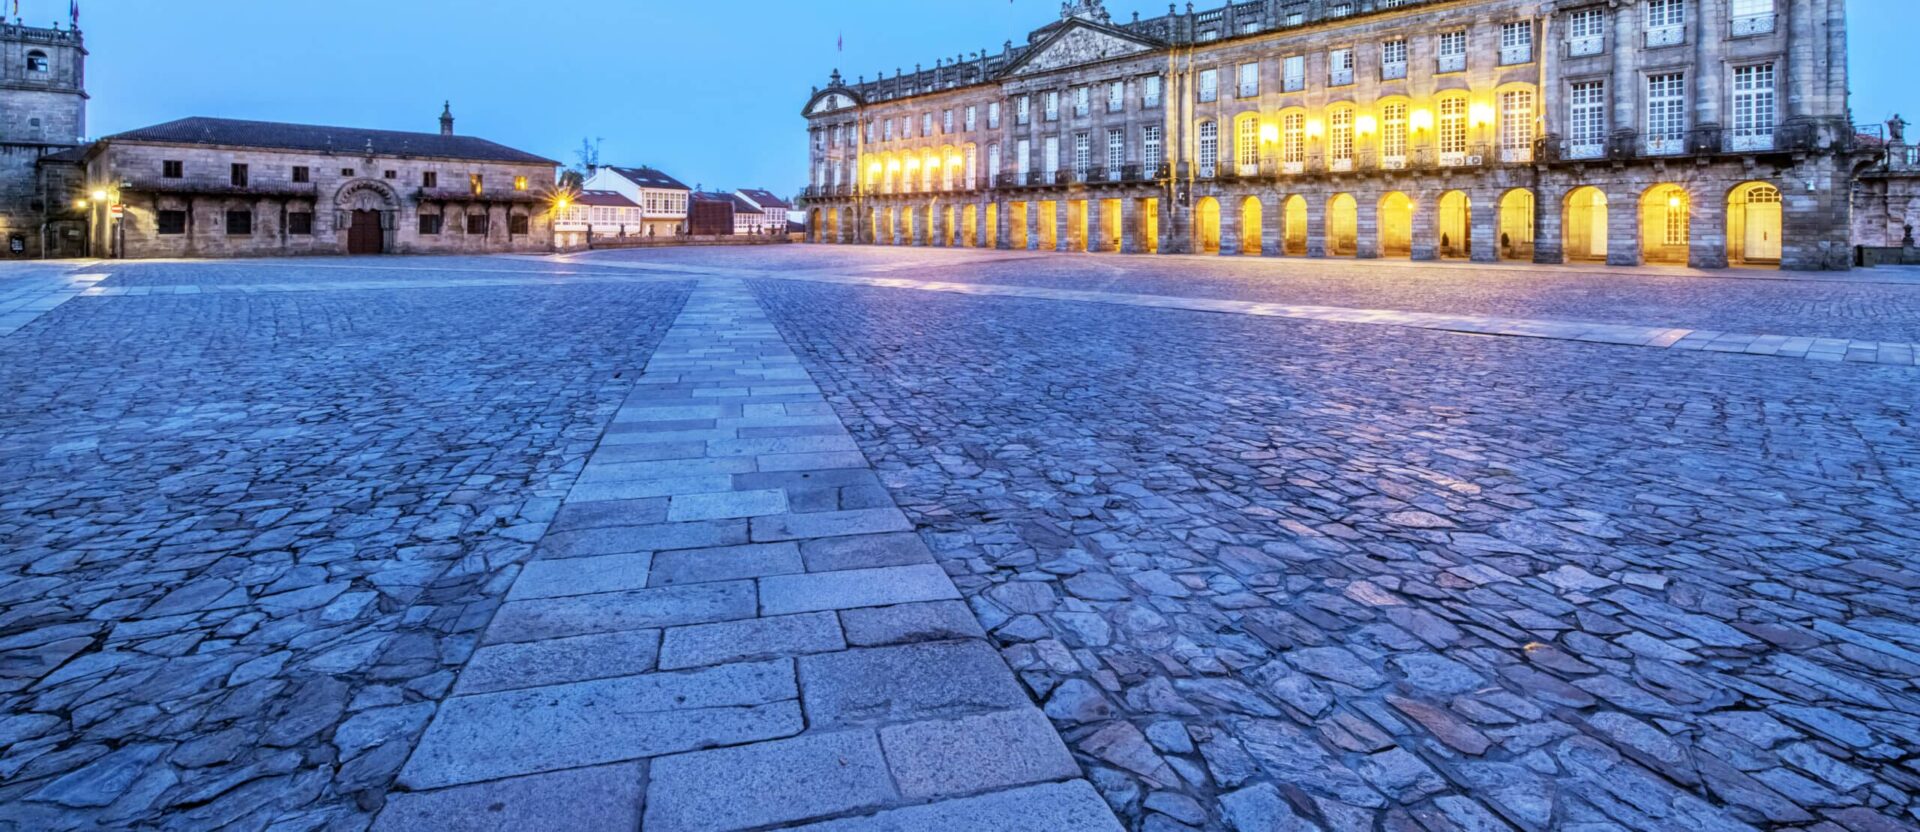 Santiago de Compostela y su iluminación